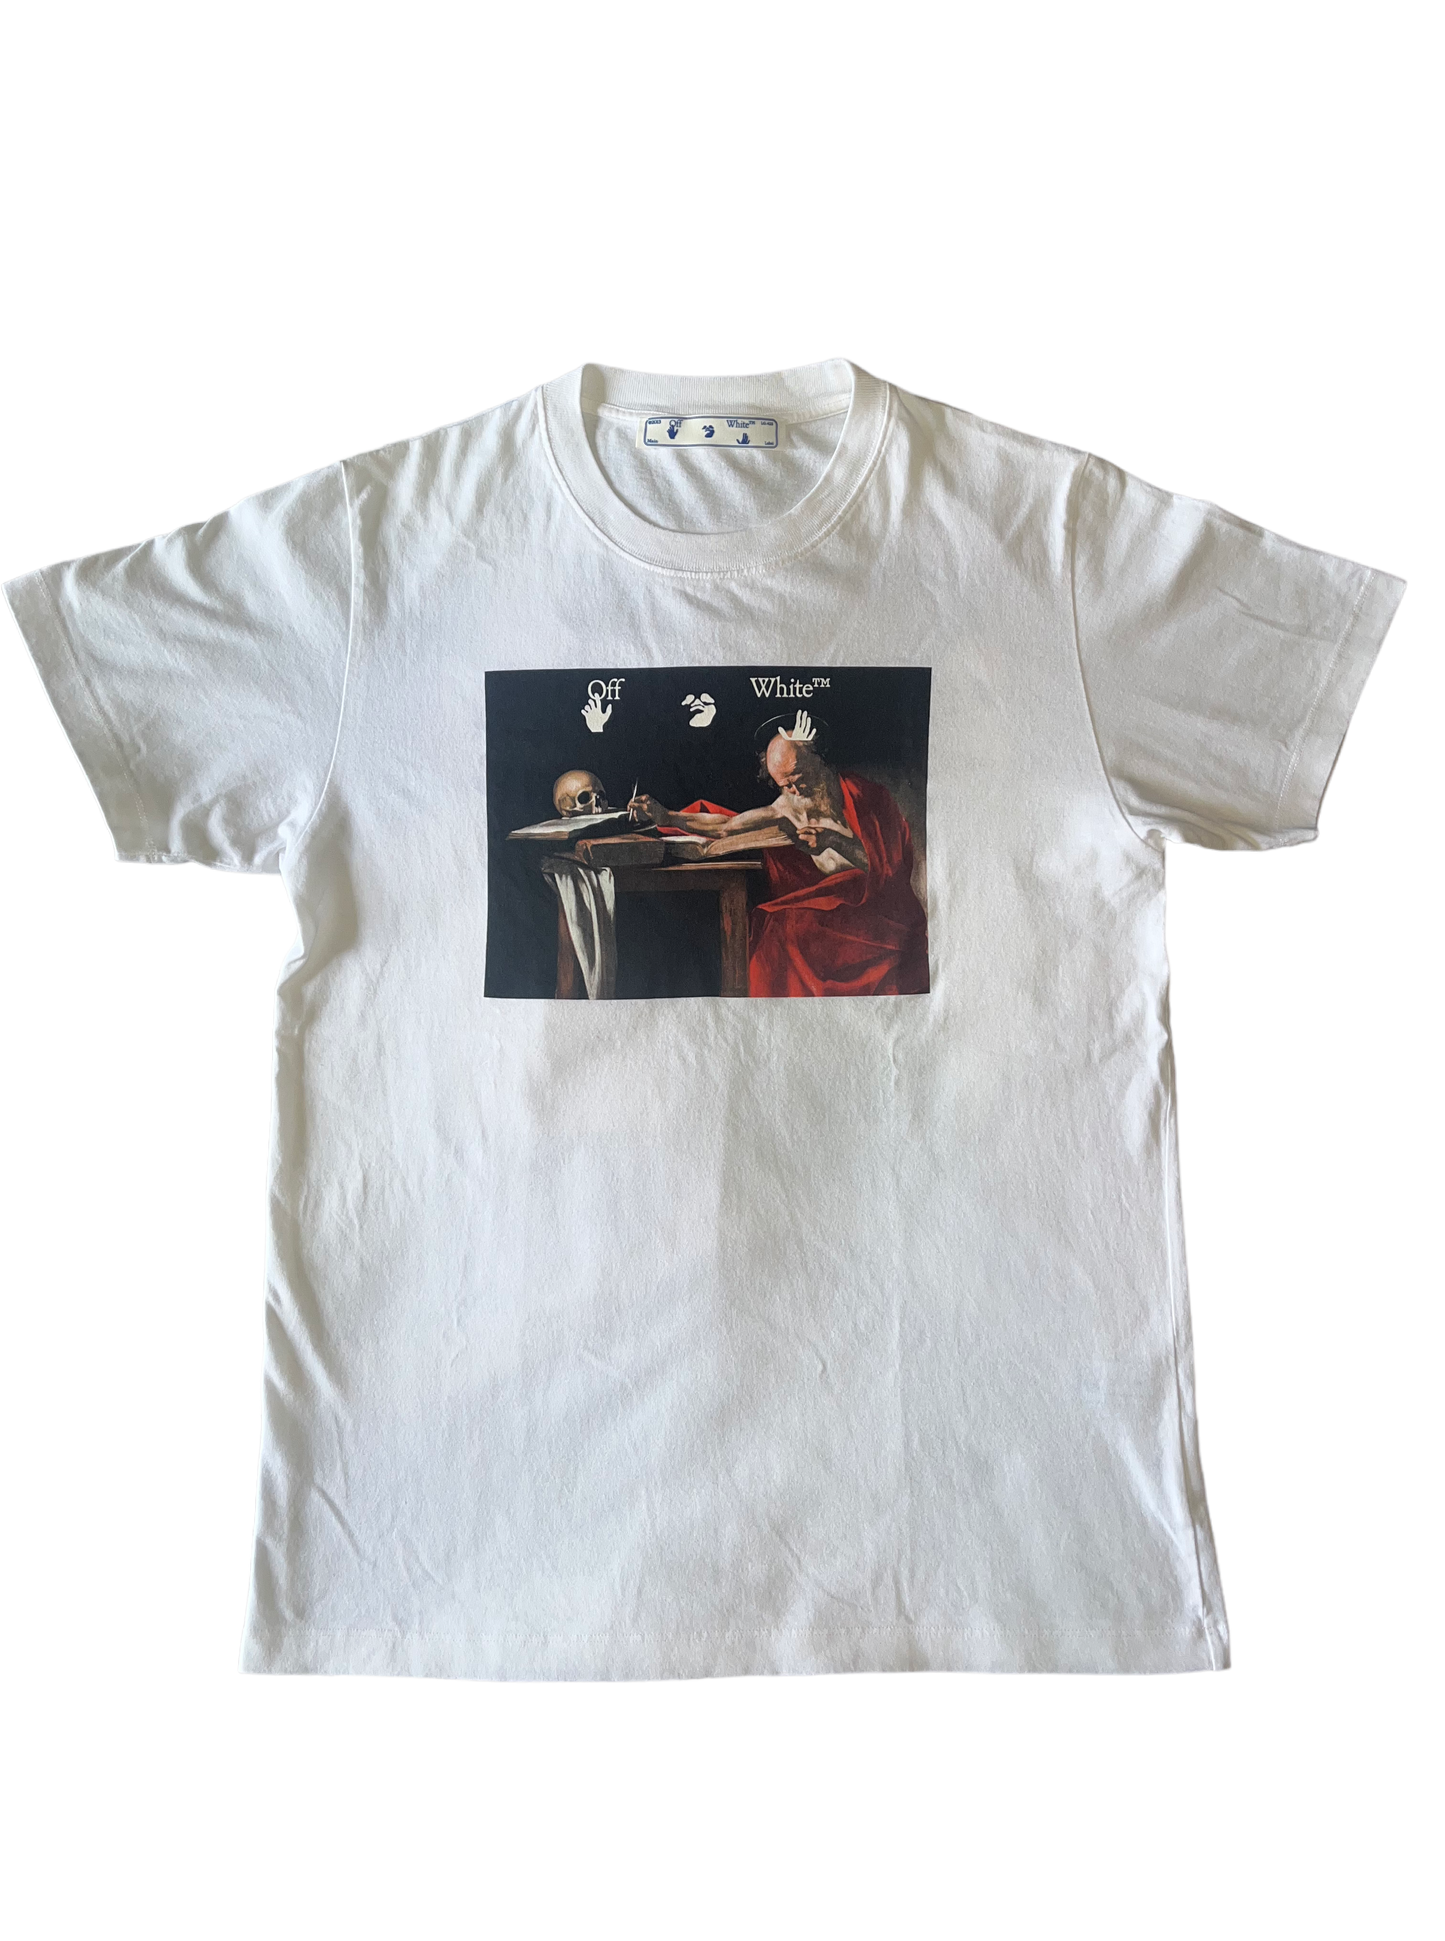 Off-White ‘Caravaggio’ T-Shirt - Medium